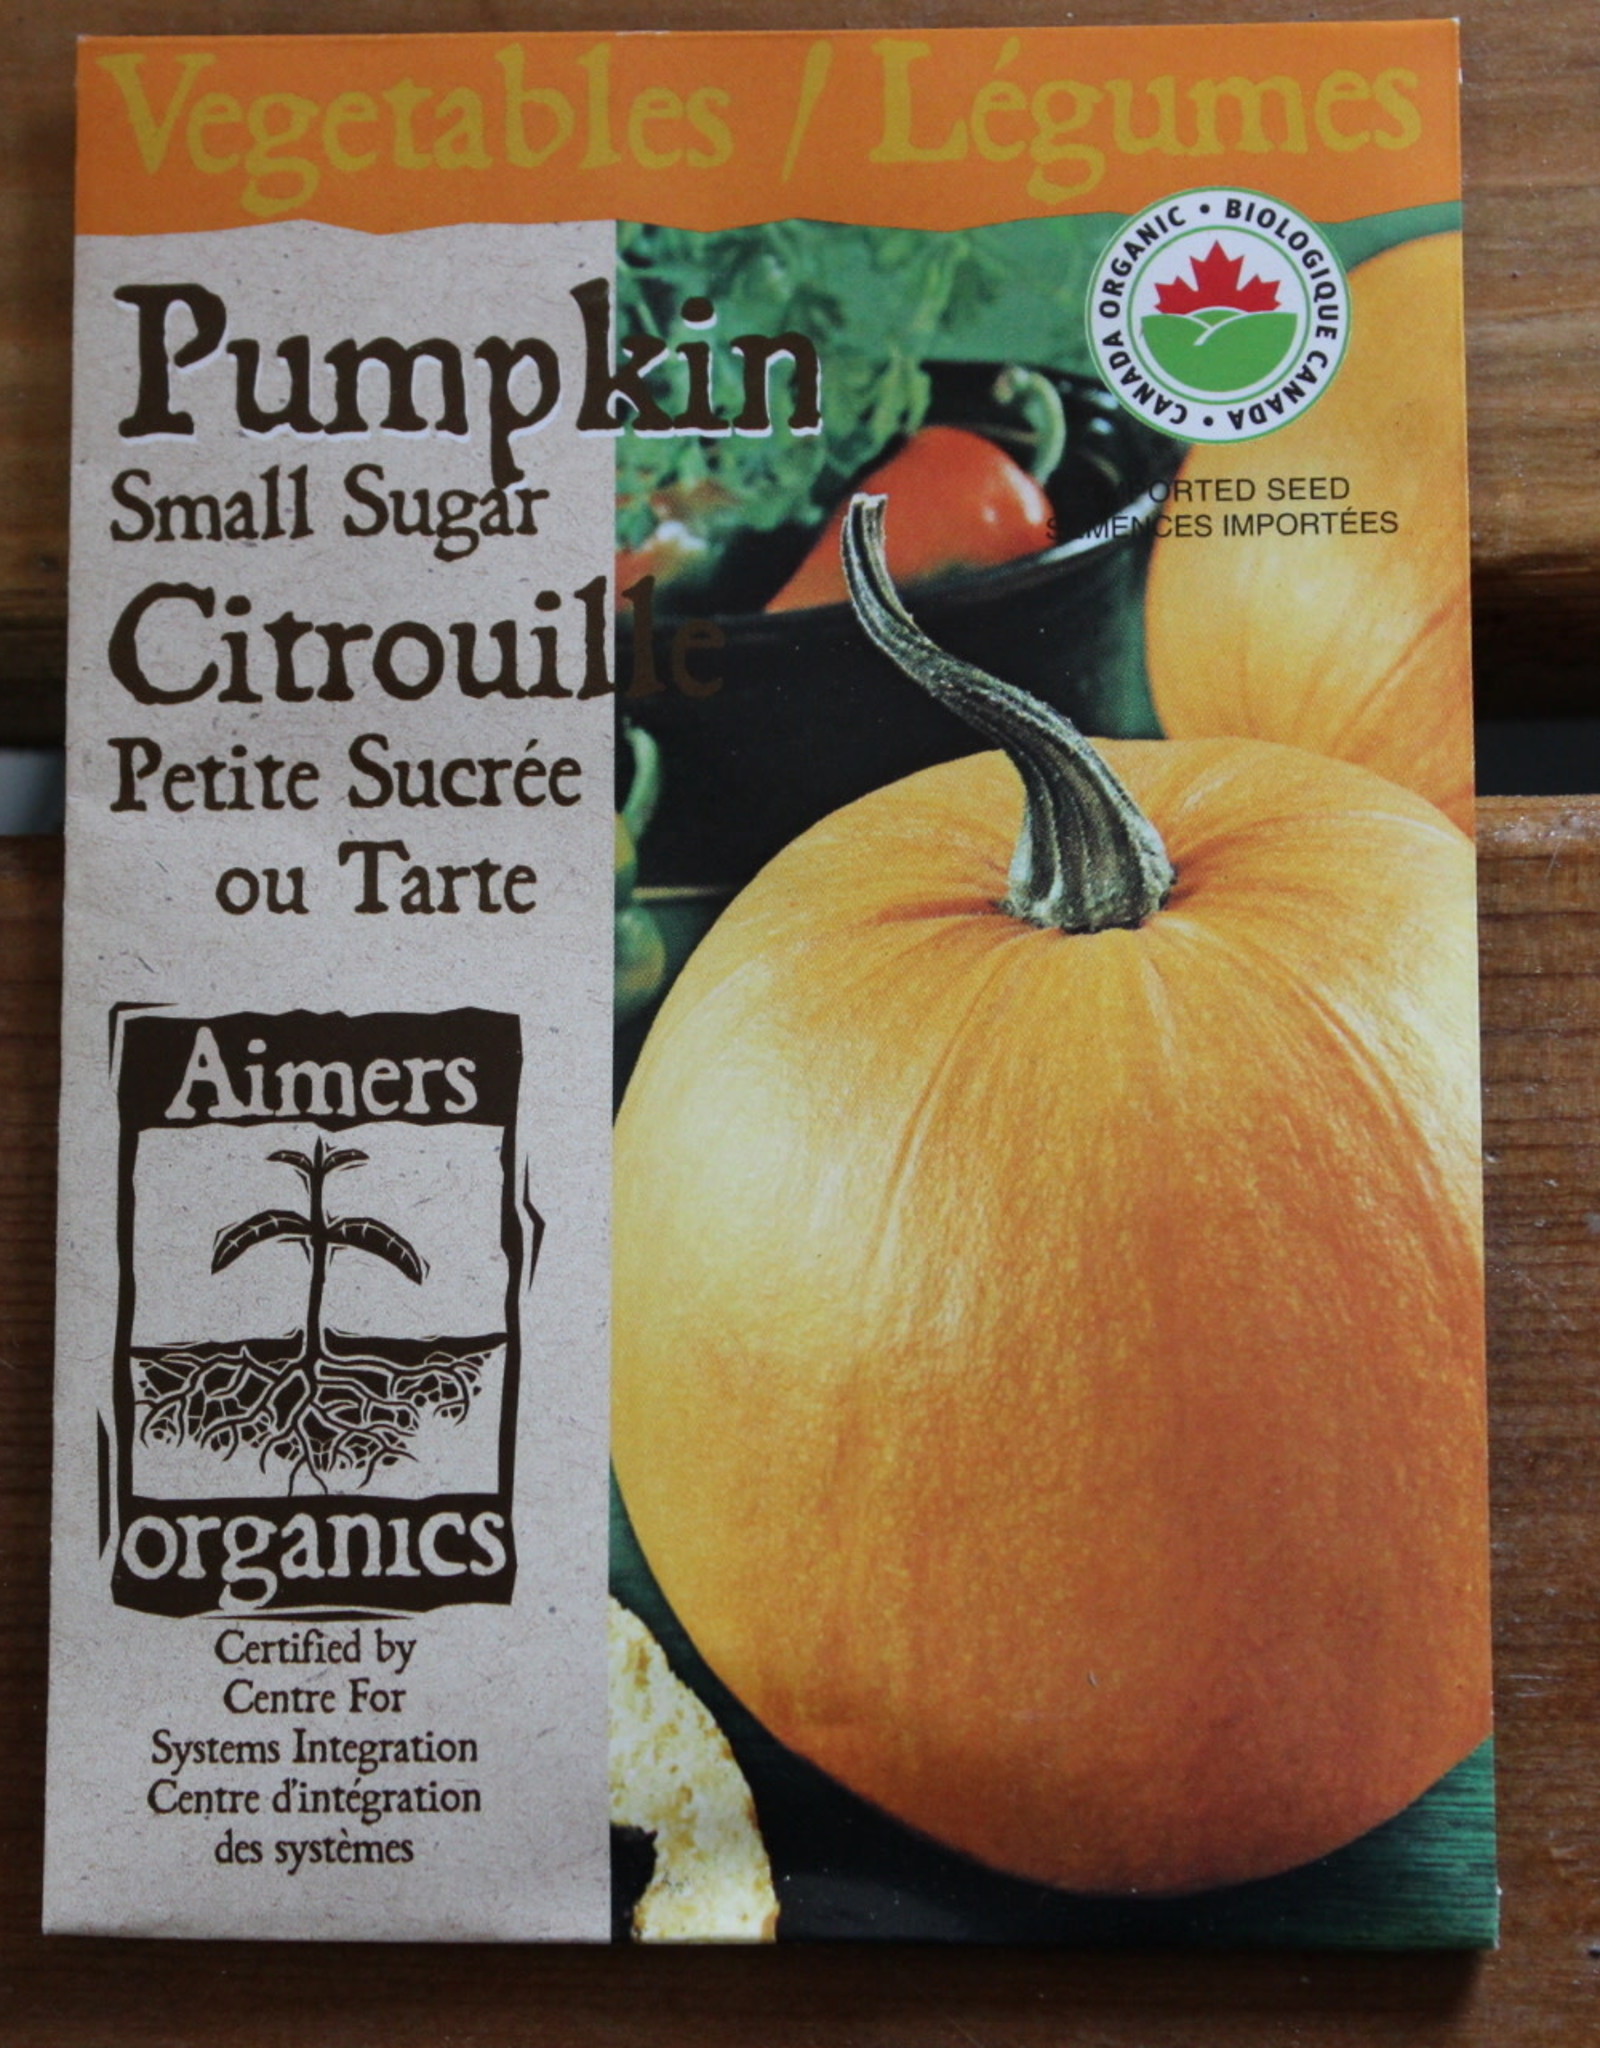 Aimers Pumpkin - Small Sugar